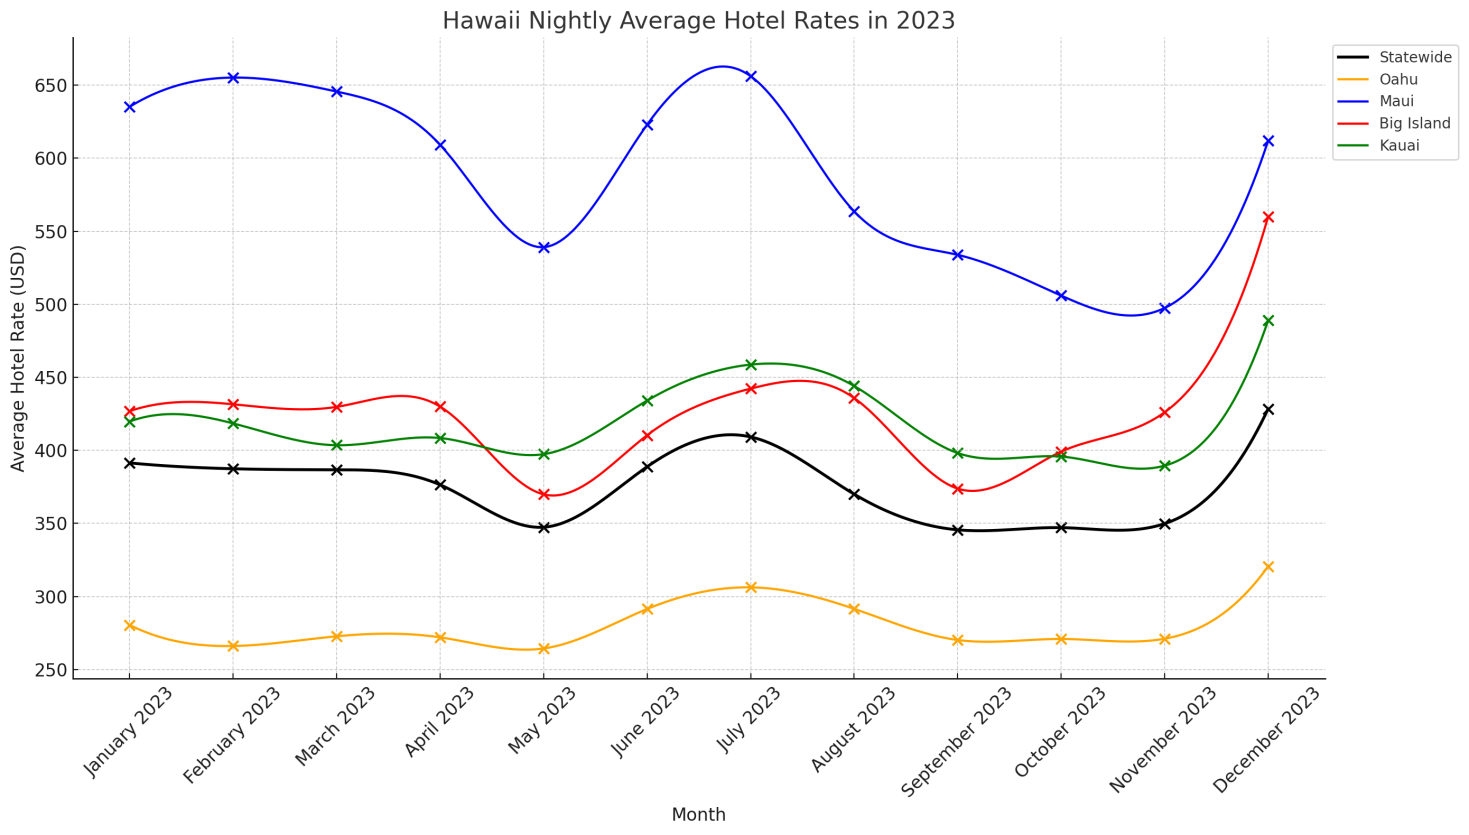 Hawaii Hotel Rates in 2023